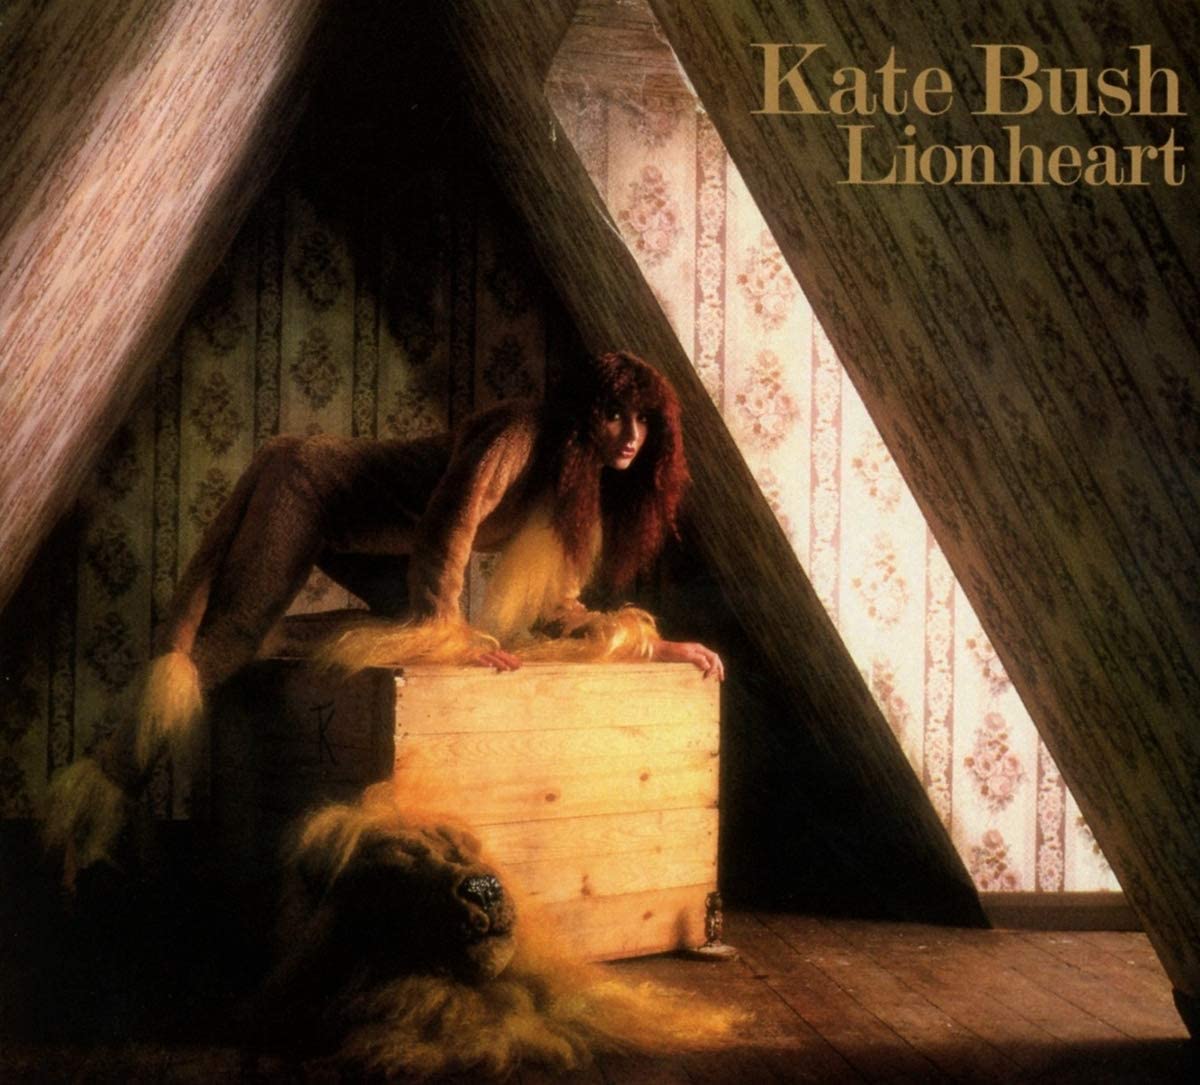 Bush, Kate/Lionheart [CD]